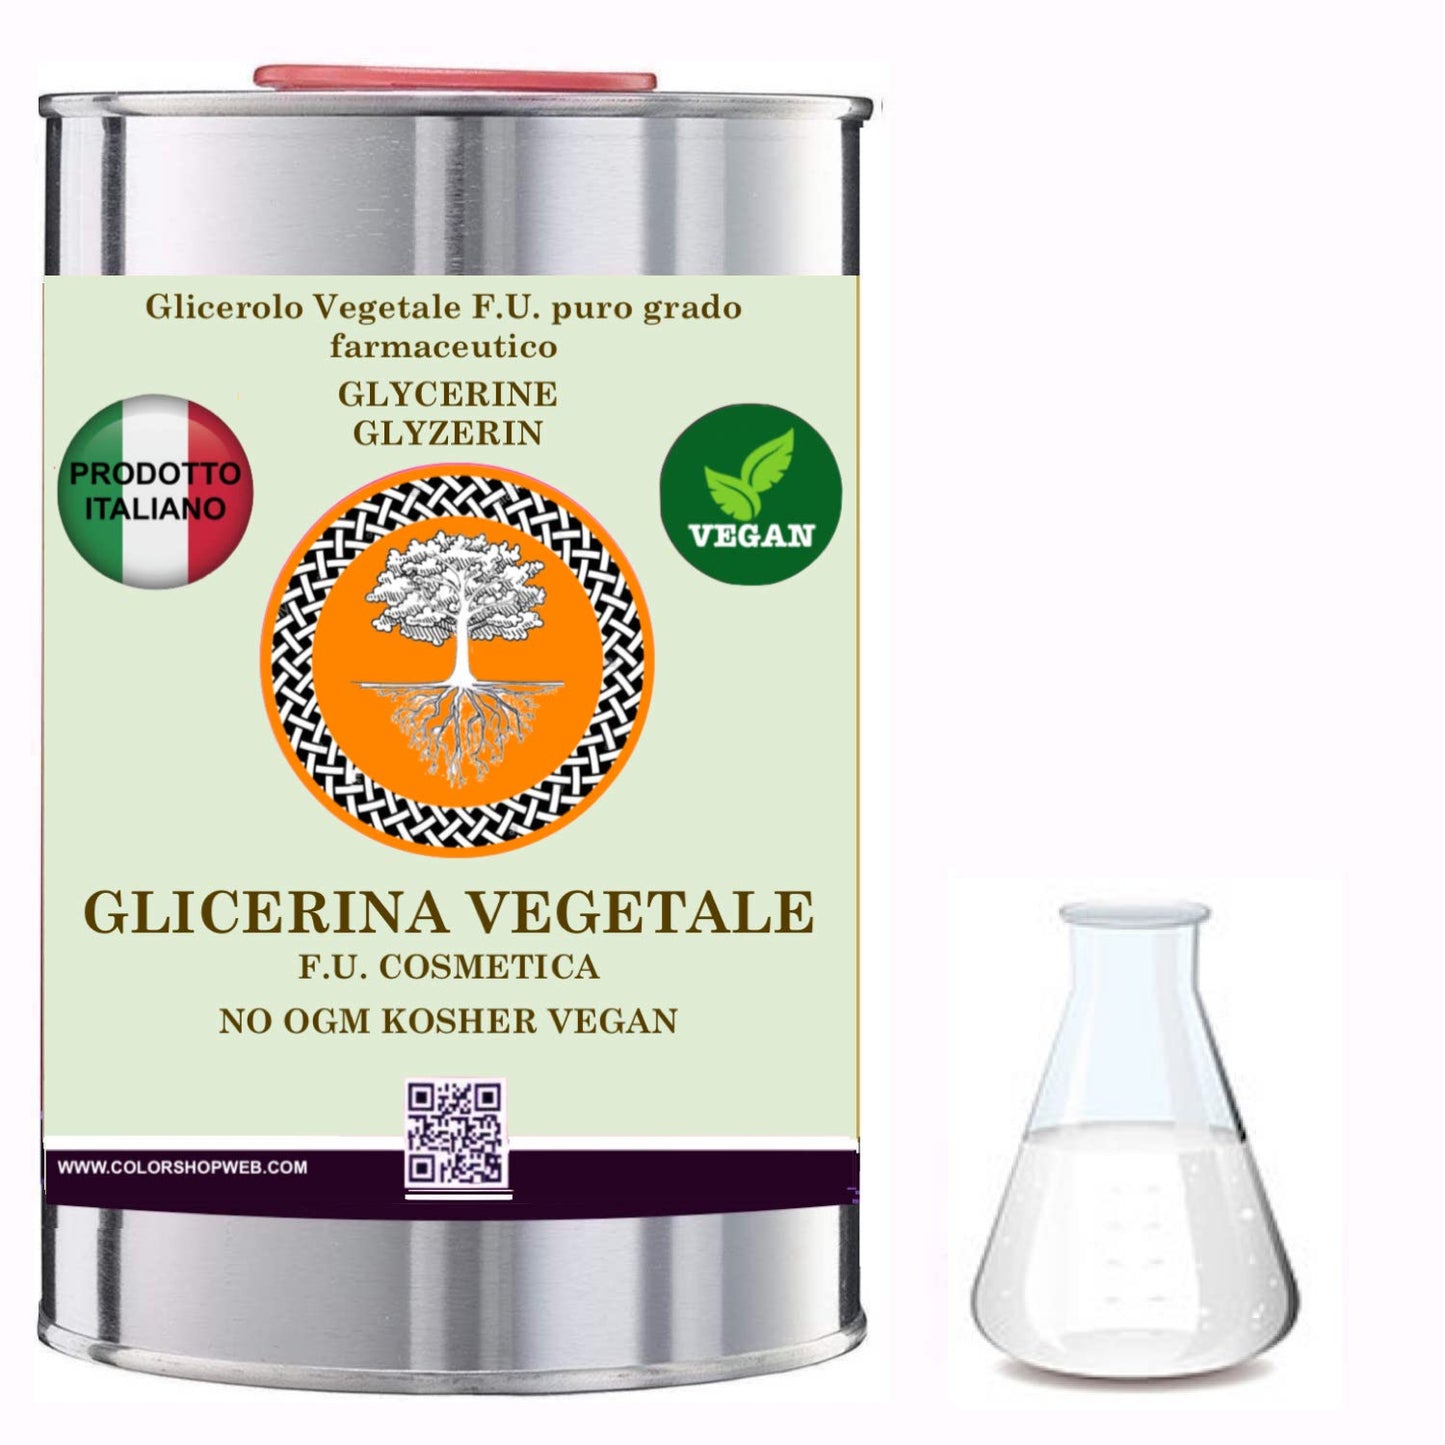 Glicerolo Vegetale F.U. puro FARMACOPEA UFFICIALE glicerina pura liquida OIL&WAX